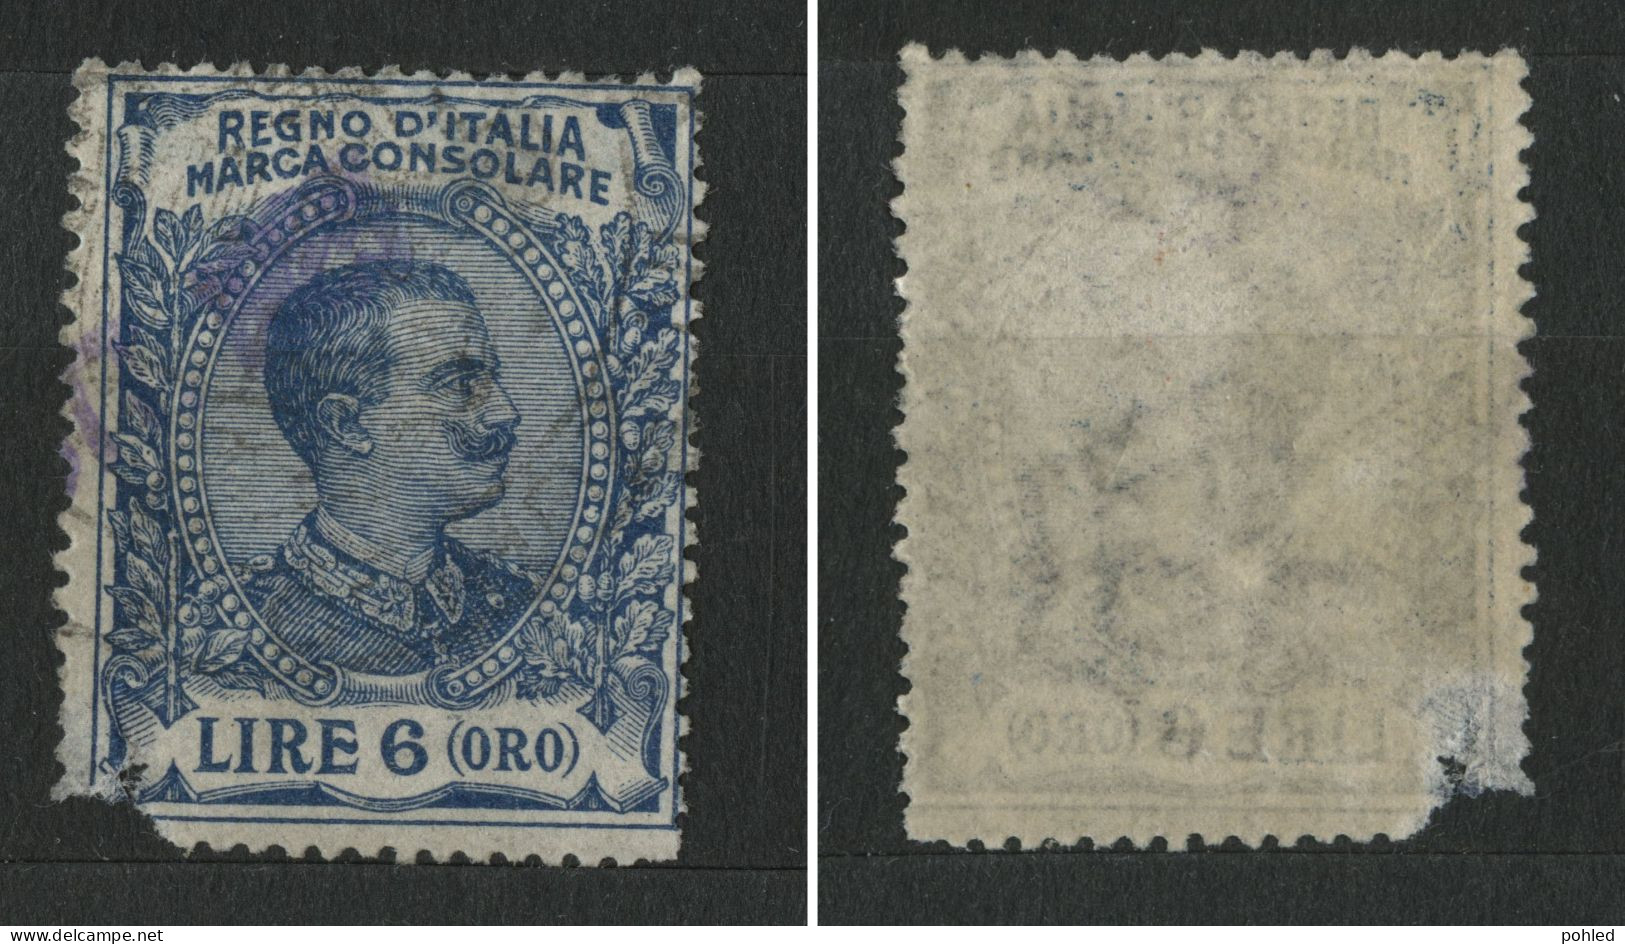 01062*ITALIA*ITALY*MARCA CONSOLARE*REVENUE STAMP*LIRE 6 (ORO) - Revenue Stamps